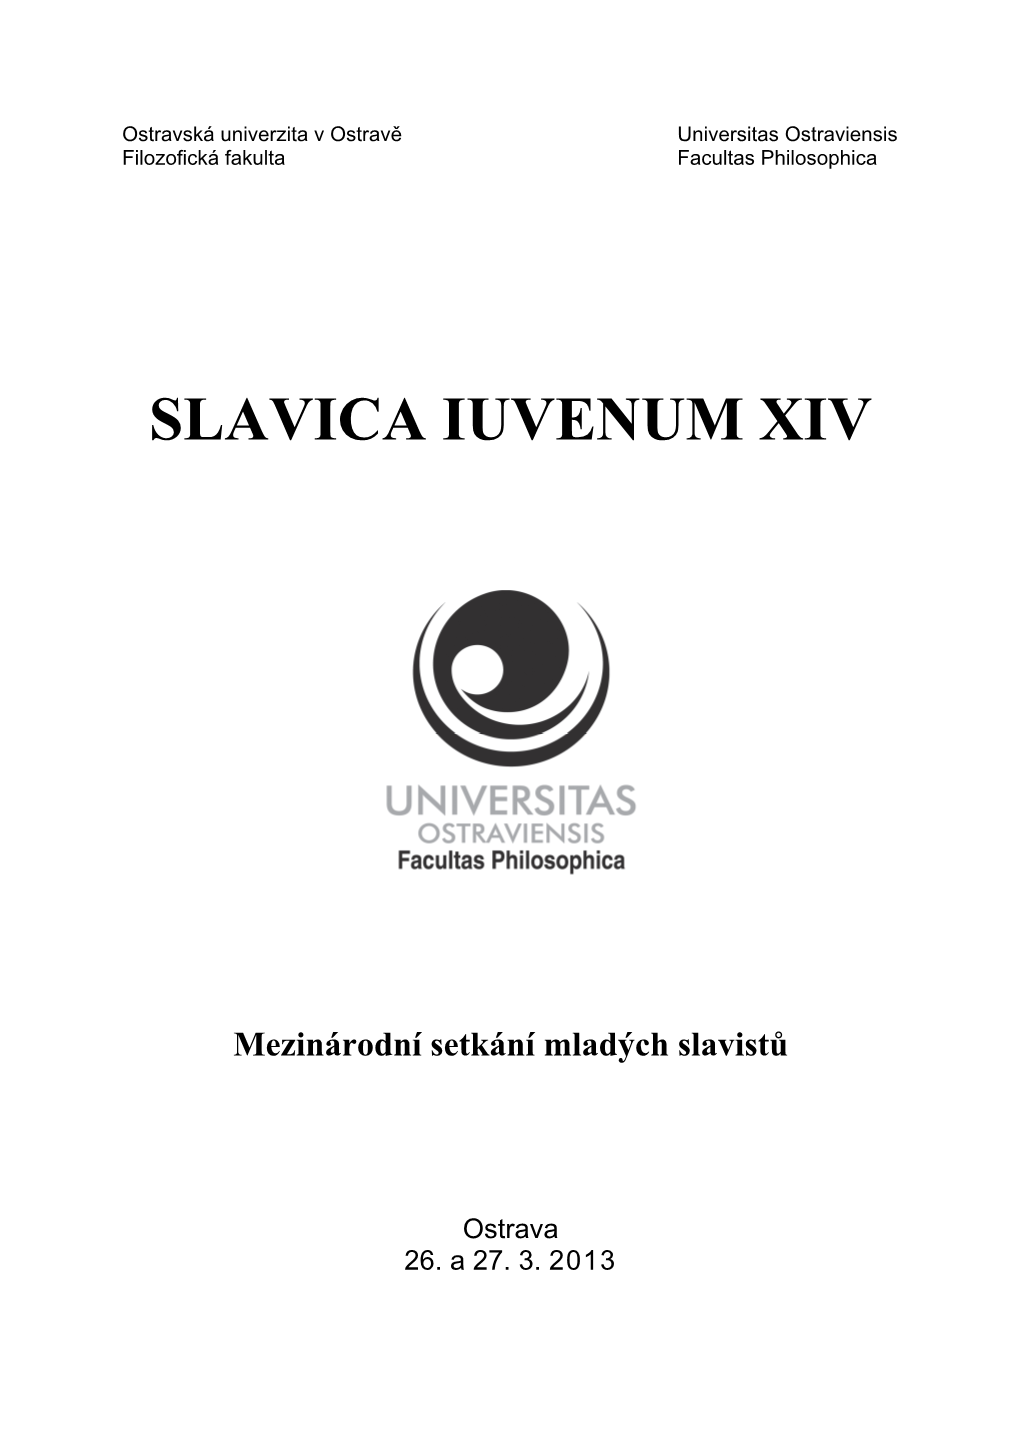 Slavica Iuvenum Xiv